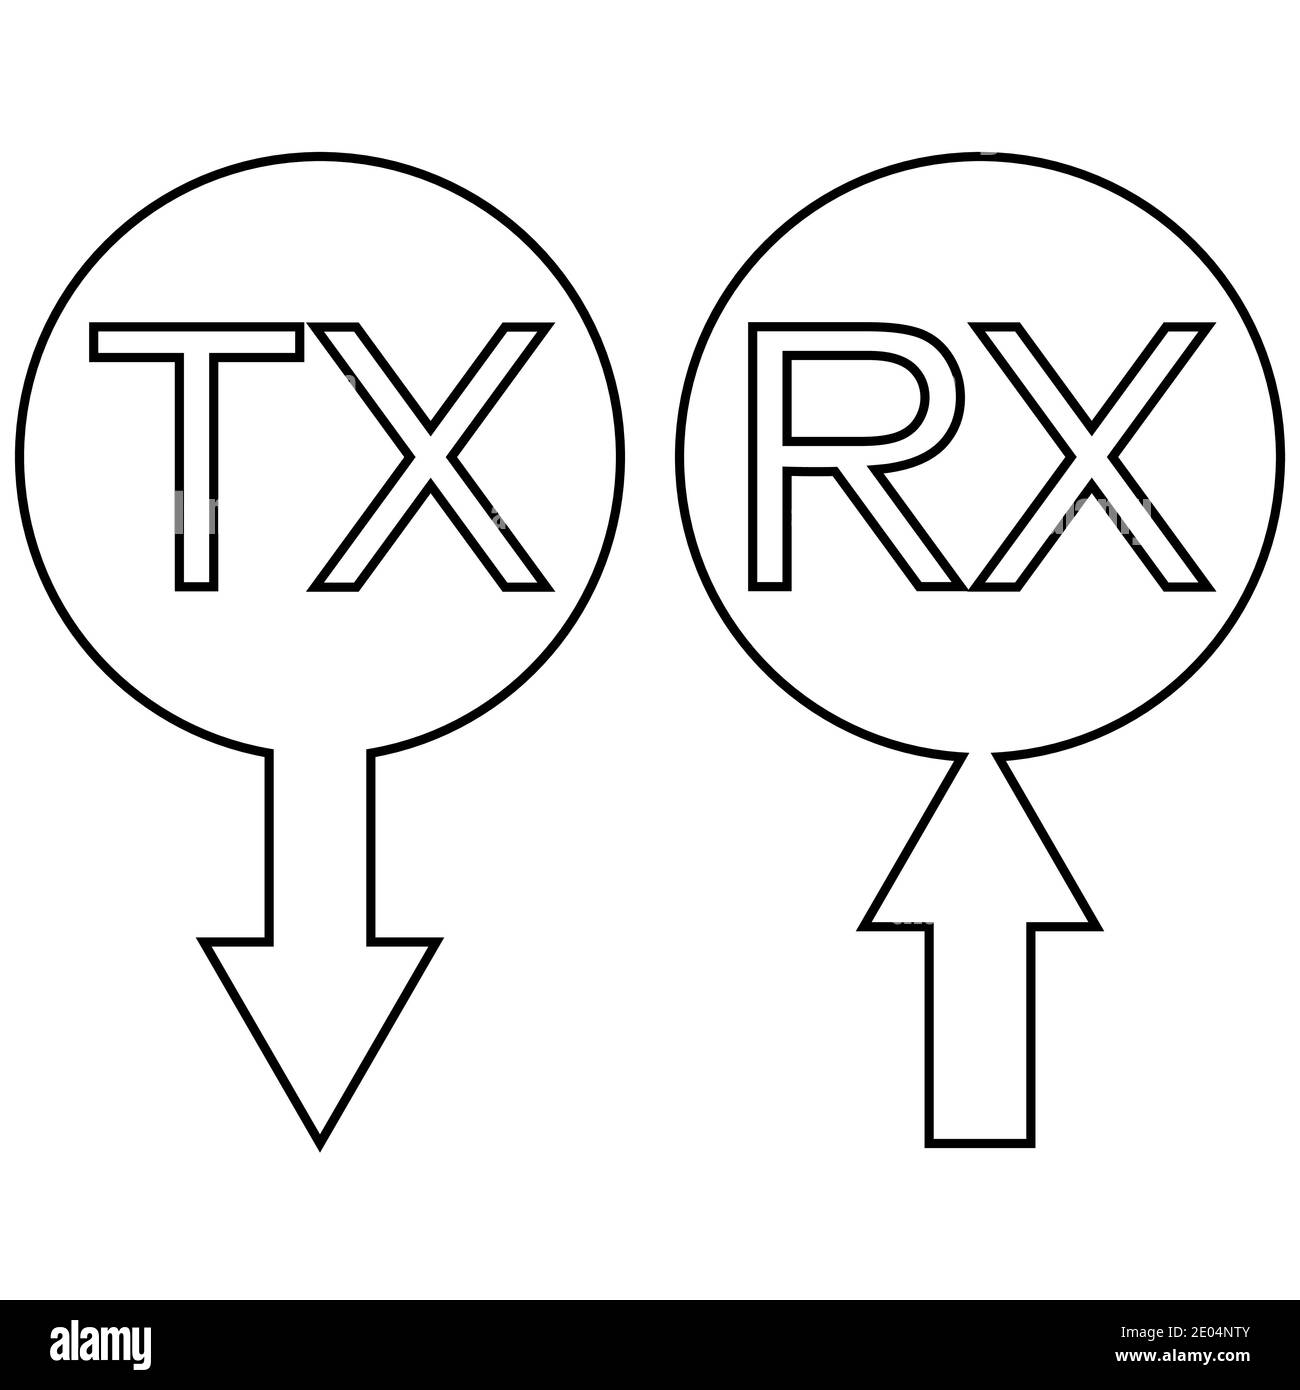 Sign Icon tx rx Übertragung empfängt Dateninformationen, Vektor einfaches Symbol tx rx ein Pfeil empfängt digitale und analoge Daten Stock Vektor